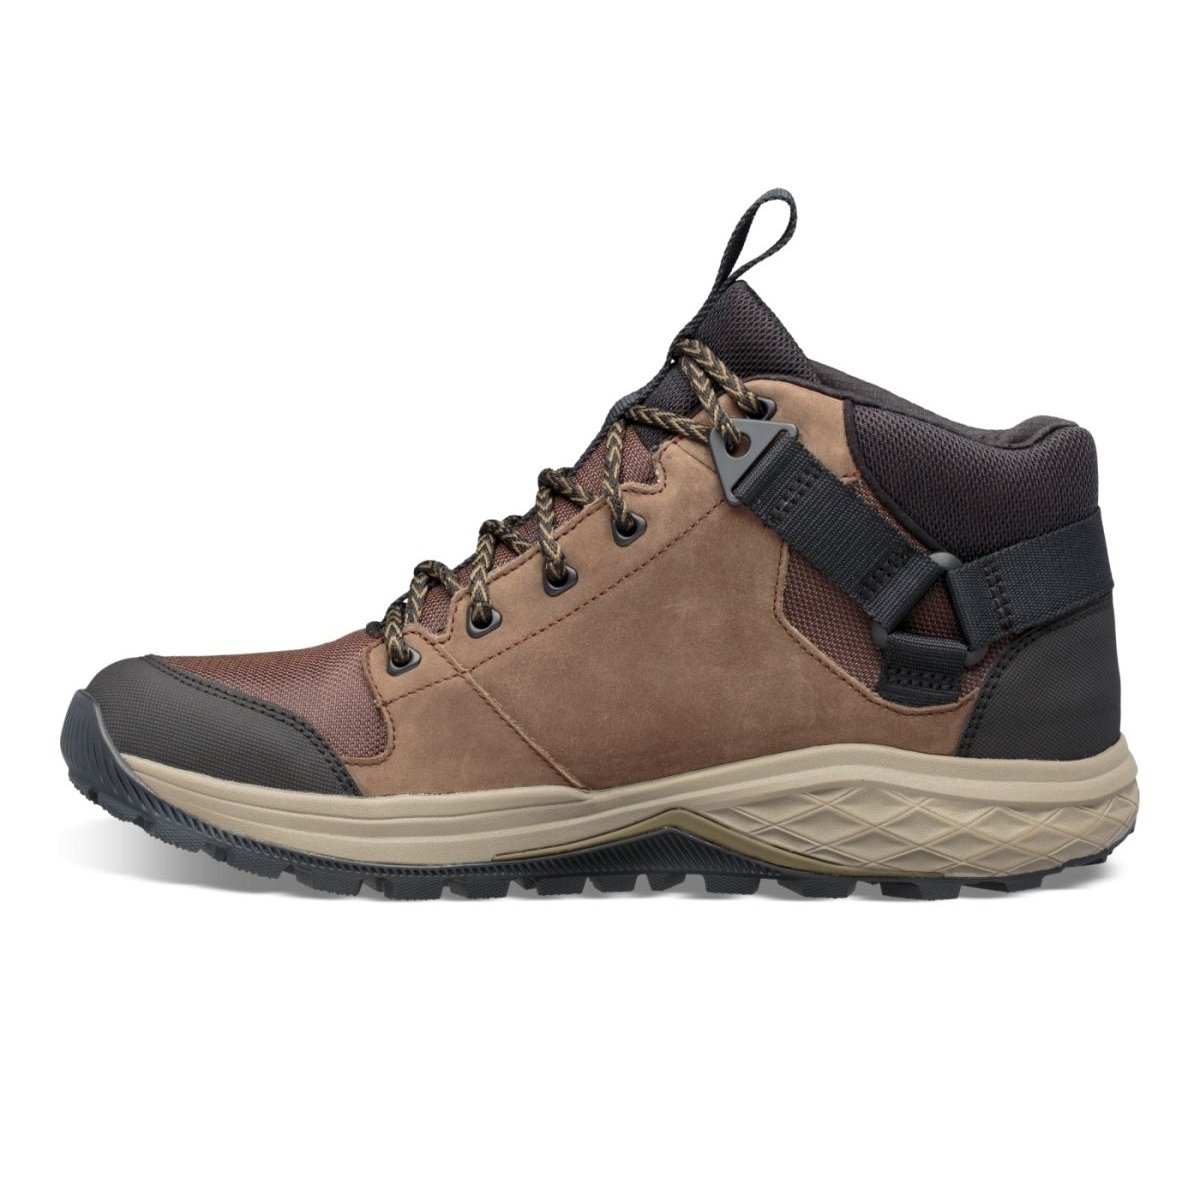 Teva Men's Grandview Mid Gore-Tex Hiking Shoe Chocolate Chip - 1106804-CCHP CHOCOLATE CHIP - CHOCOLATE CHIP, 9.5